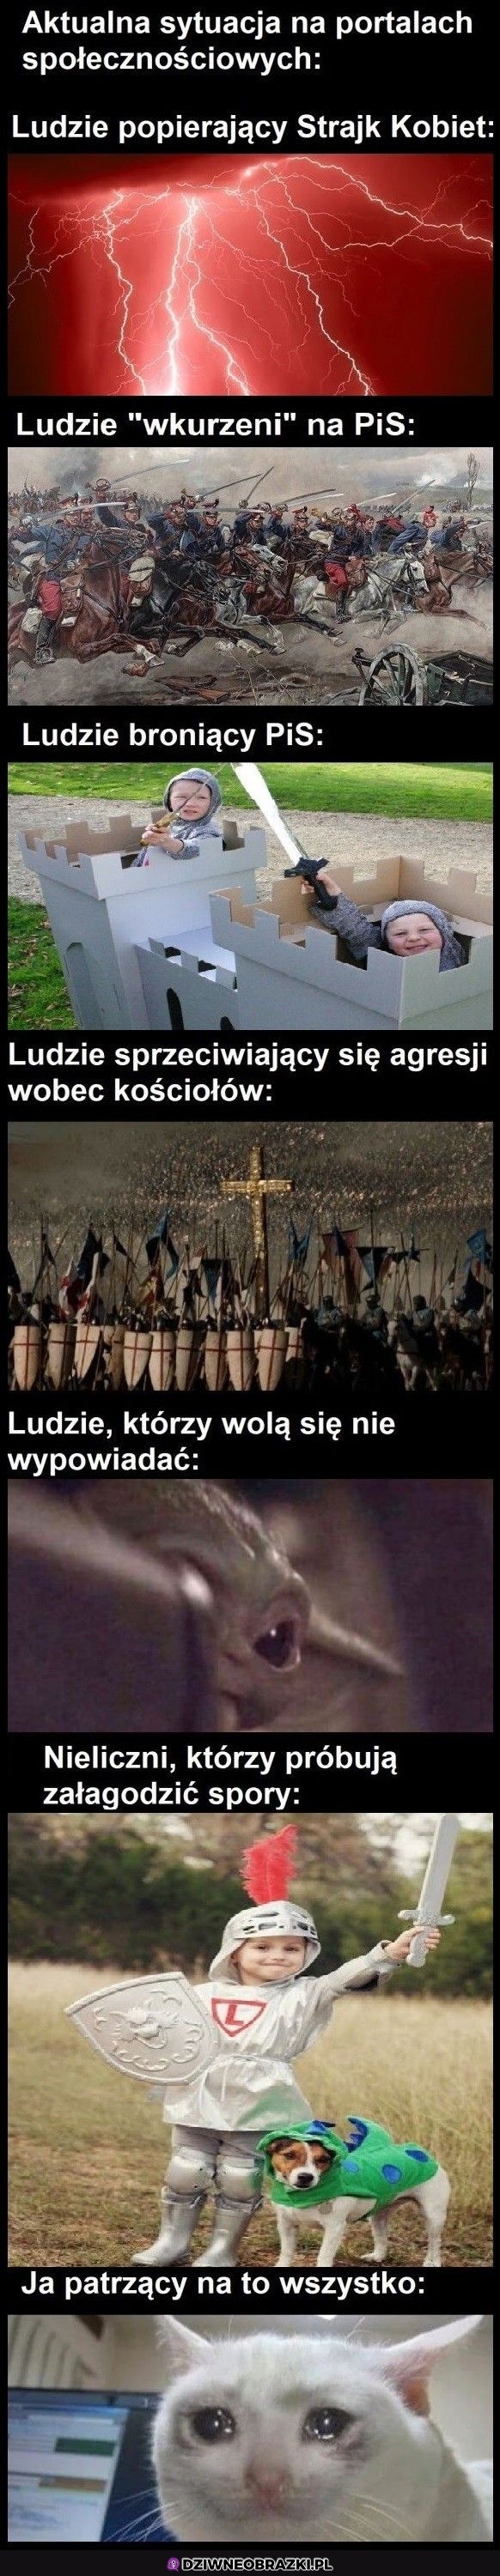 Tymczasem Polska